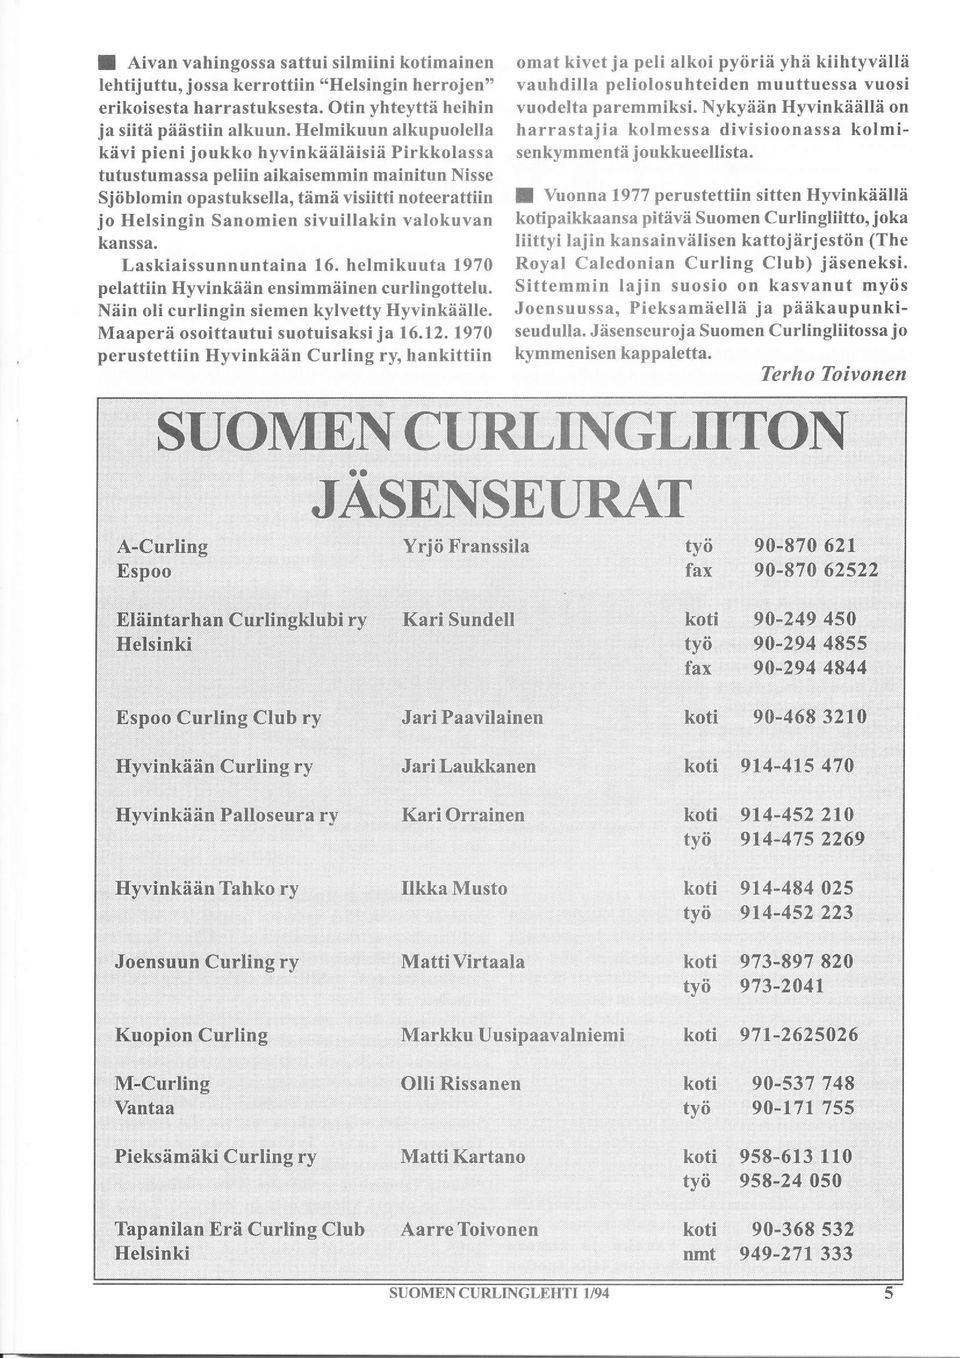 valokuvan kanssa. Laskiai ssu n n untain a 16, helmikuuta 1970 pelattiin Hyvinkåän ensimmäinen curlingottelu. Näin oli curlingin siemen kylvetty Hyvinkäälle. Maaperä osoittautui suotuisaksi ja 16.12.